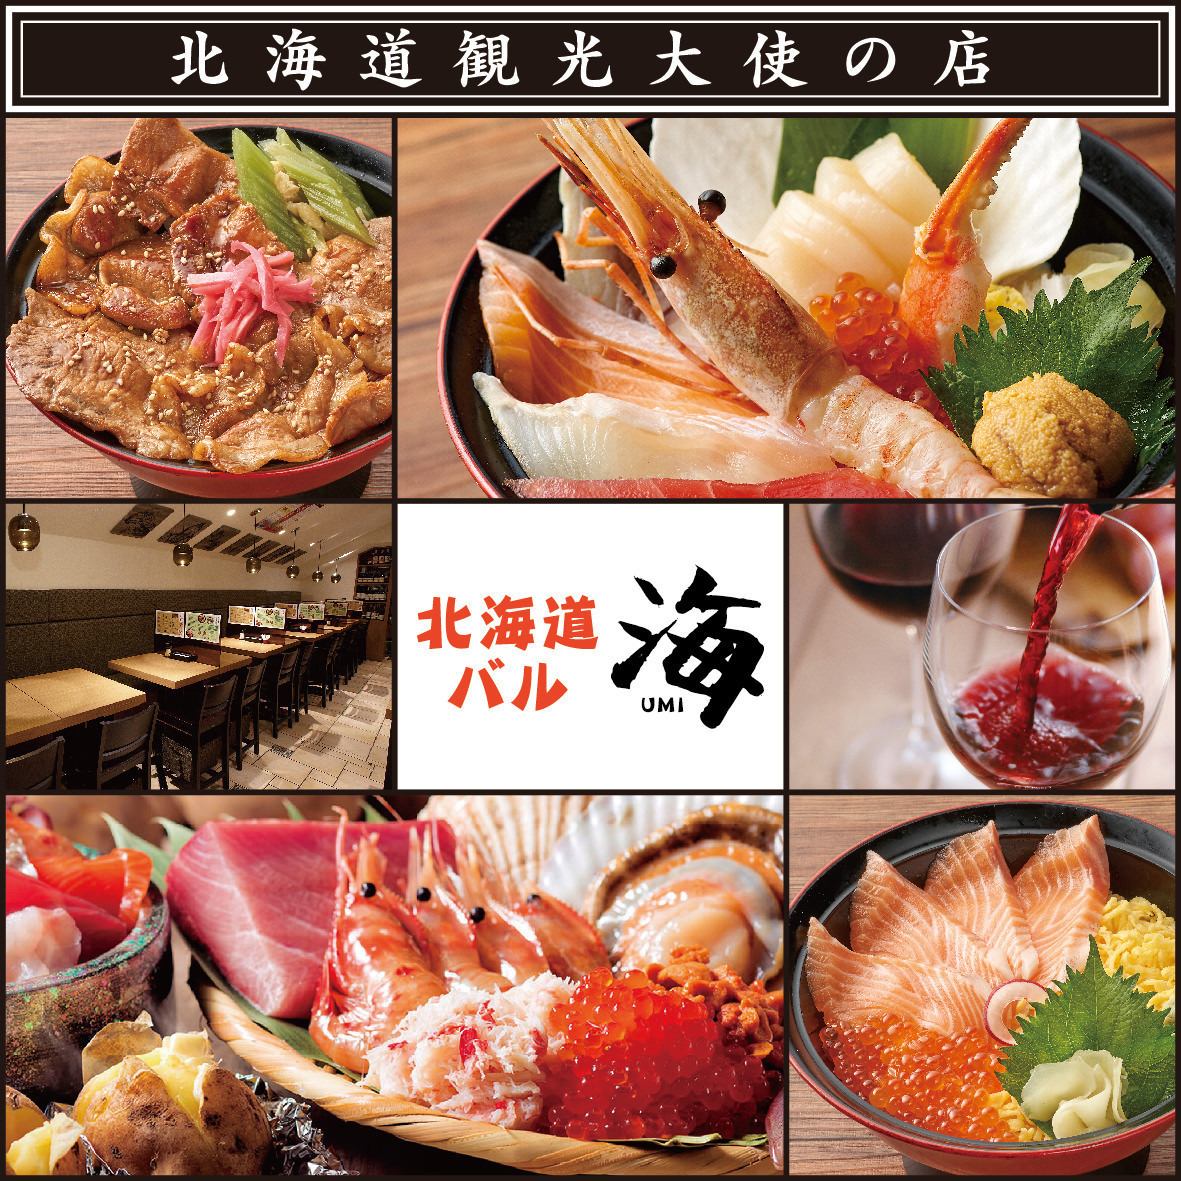 鮮度と質にこだわり、北海道の食材をリーズナブルにお楽しみいただけます。